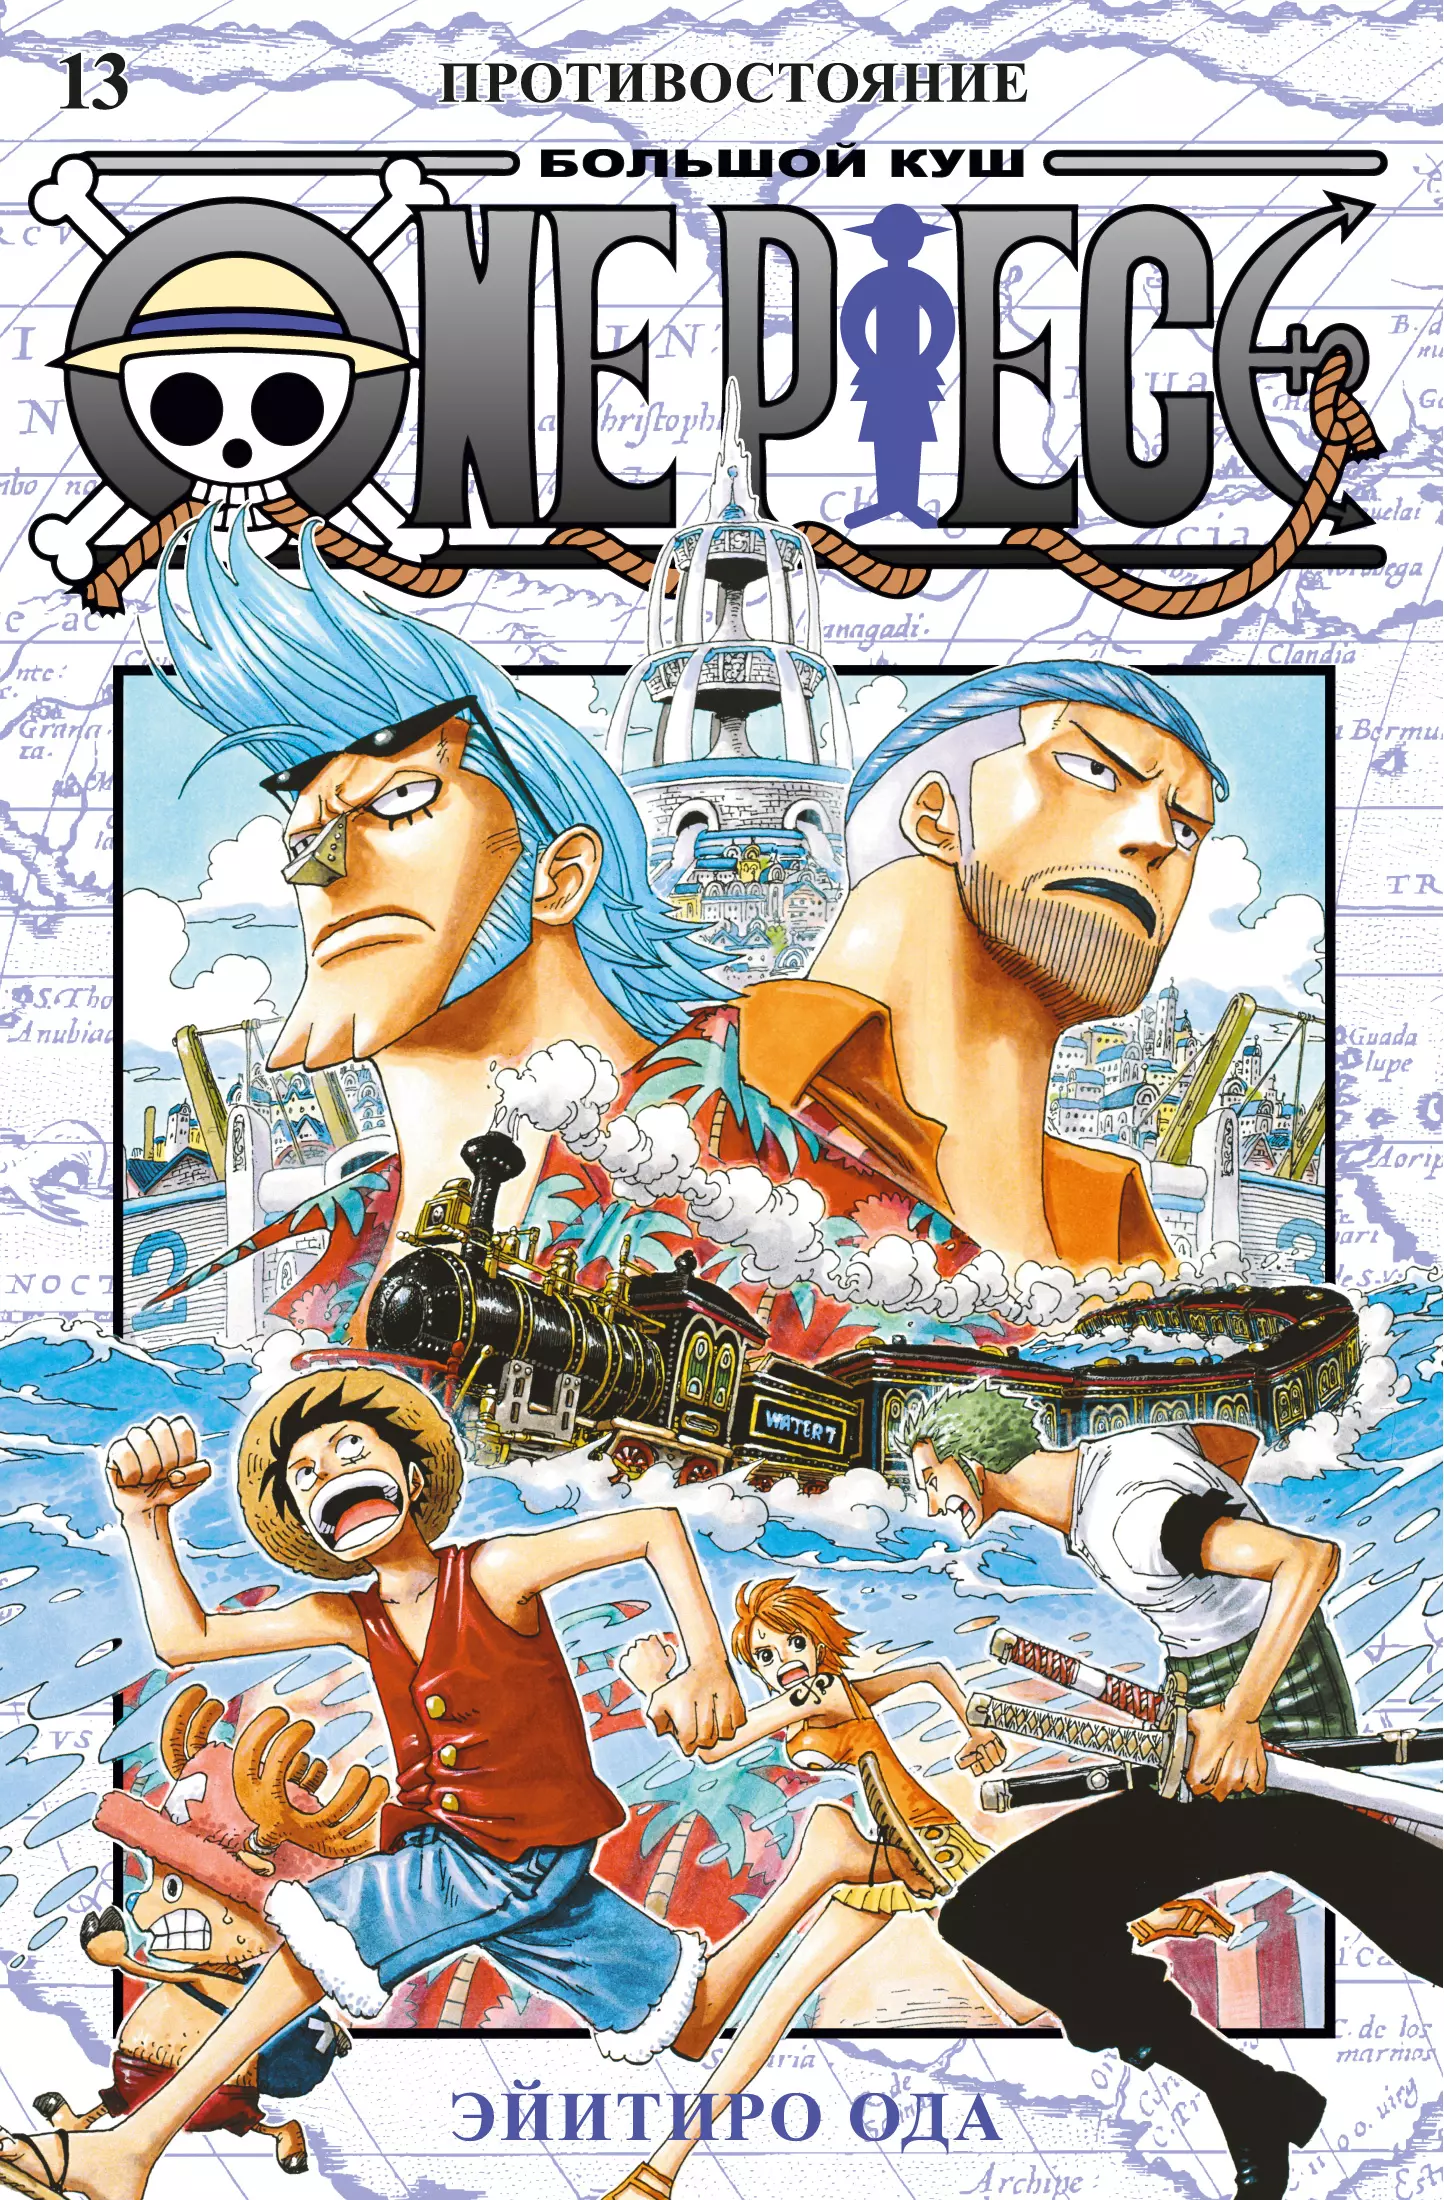 Ода Эйитиро One Piece. Большой куш. Книга 13. Противостояние